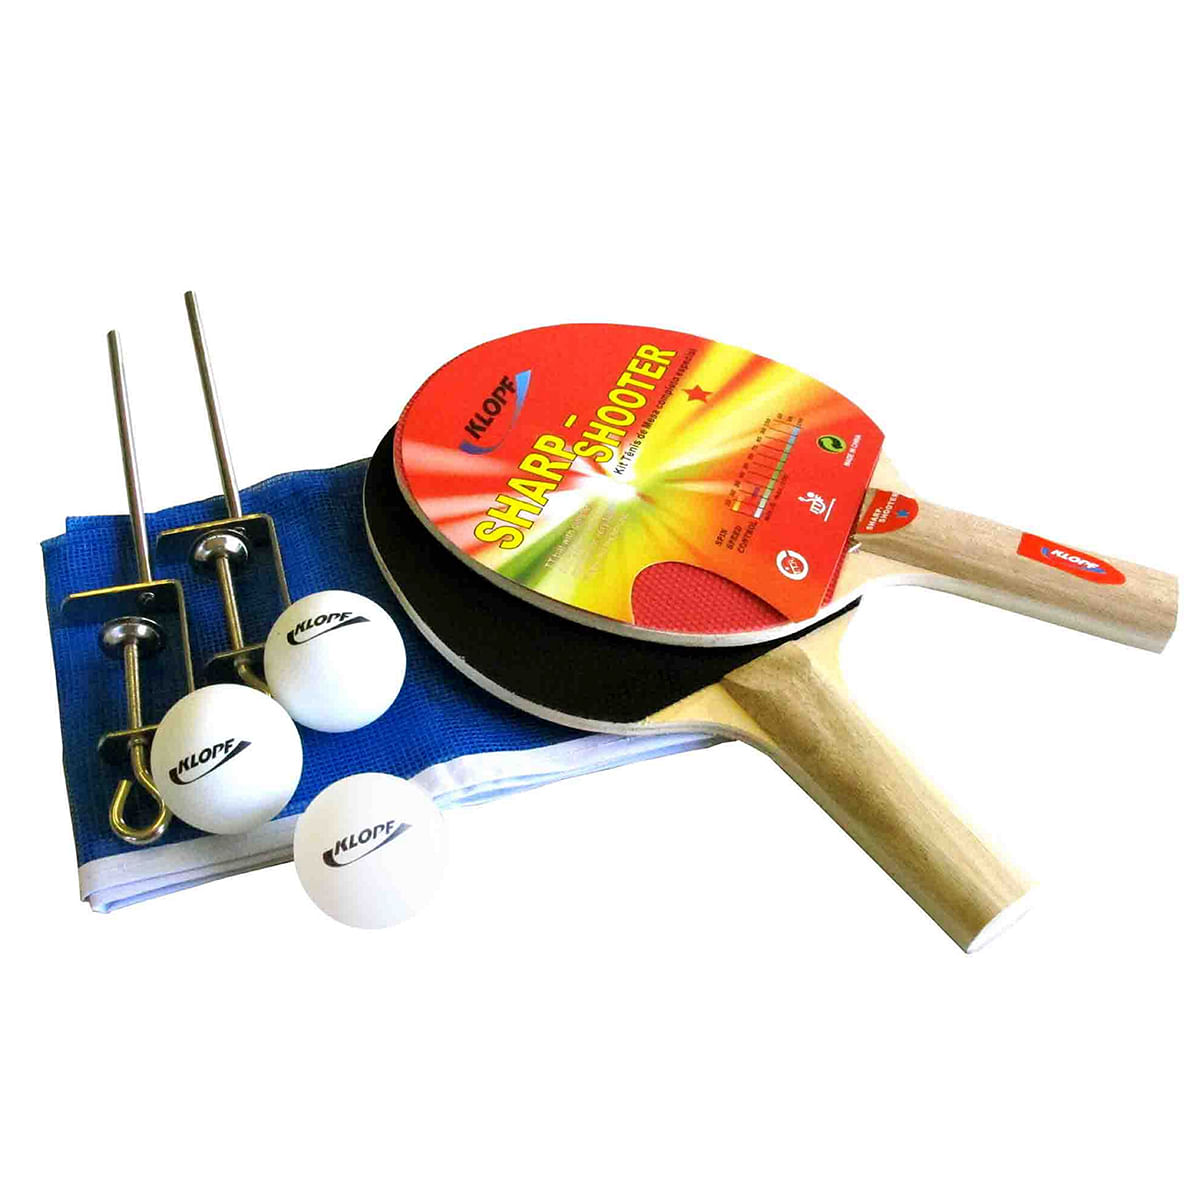 Mesa de ping pong mdp 15mm 1001 klopf + kit Suporte, Rede, Bolinhas 5030 em  Promoção na Americanas